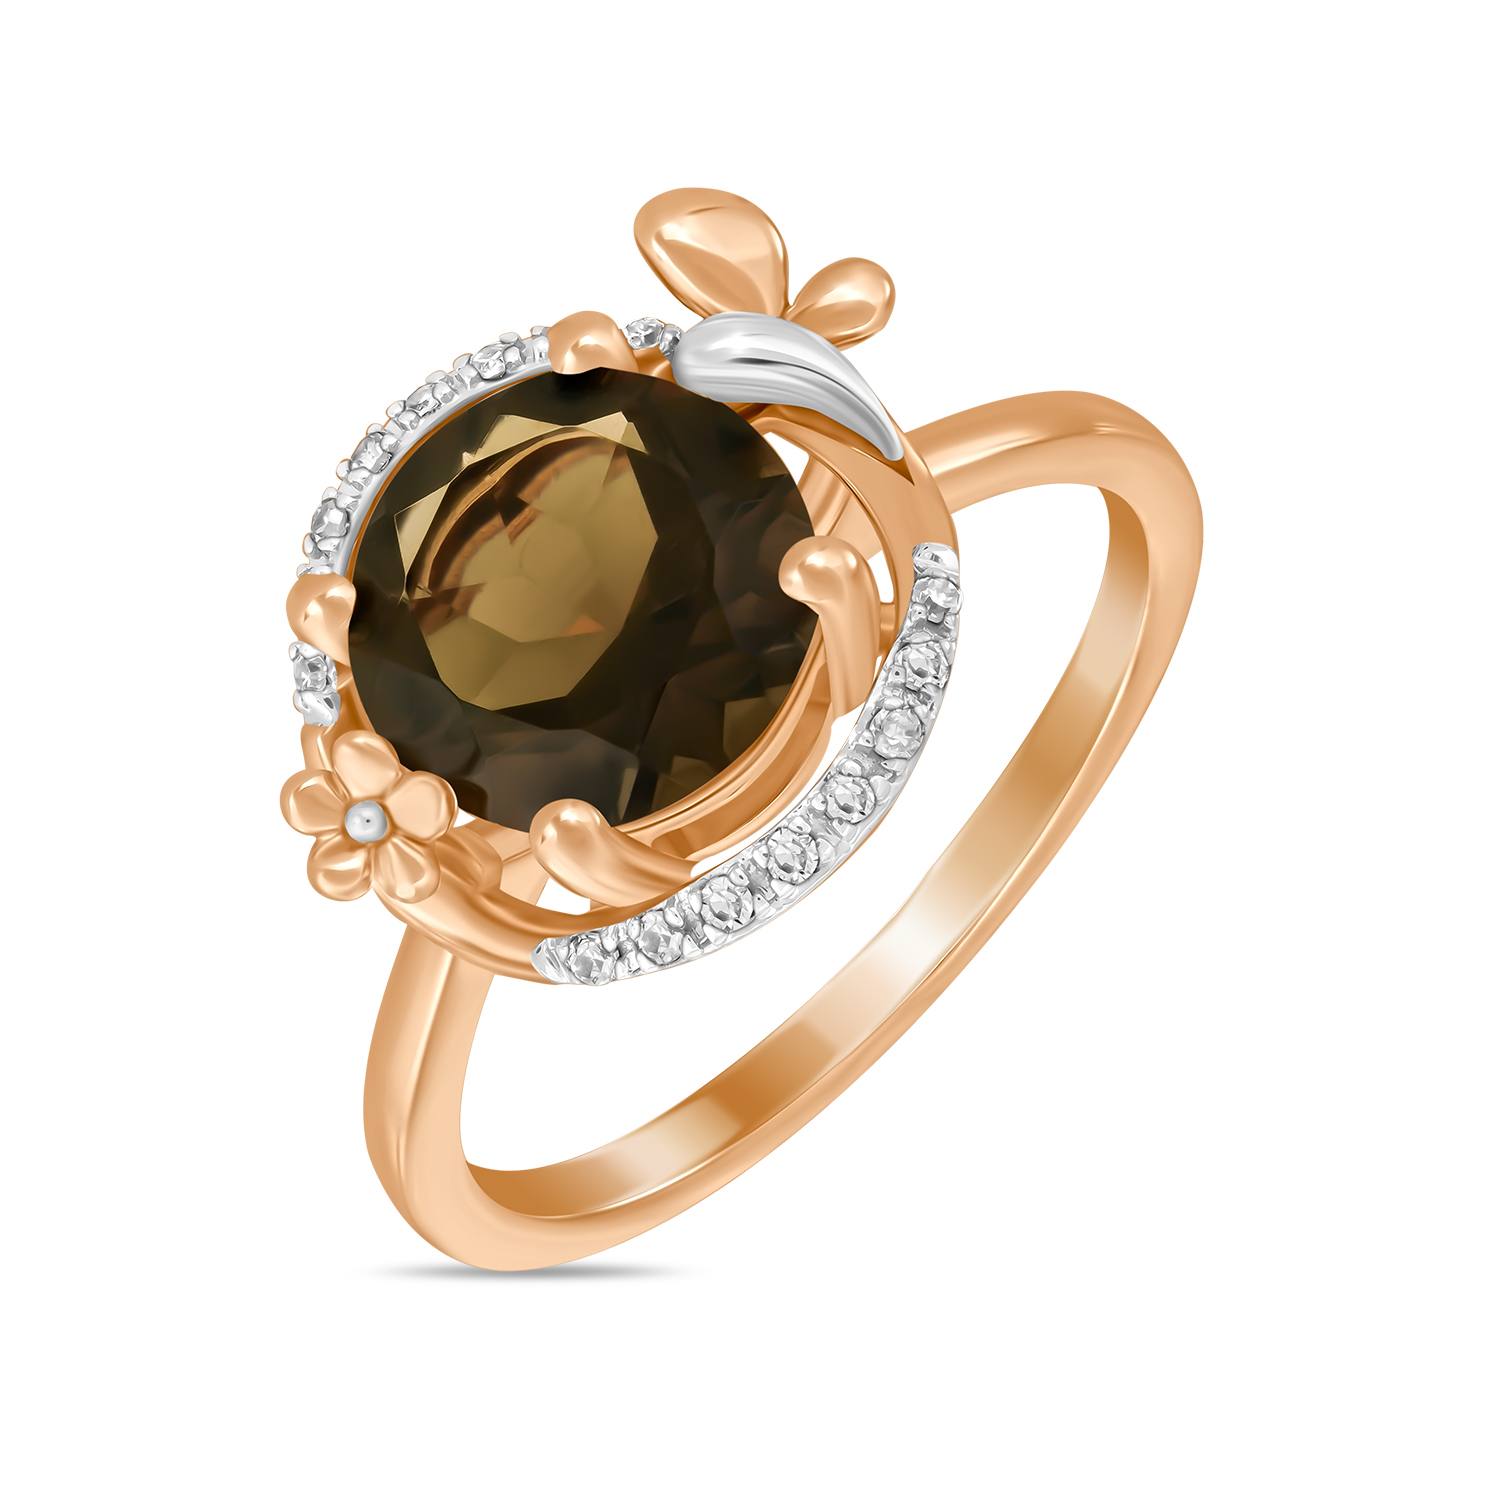 Кольца МЮЗ Золотое кольцо с бриллиантами и кварцем кольца мюз золотое кольцо с гранатами и кварцем